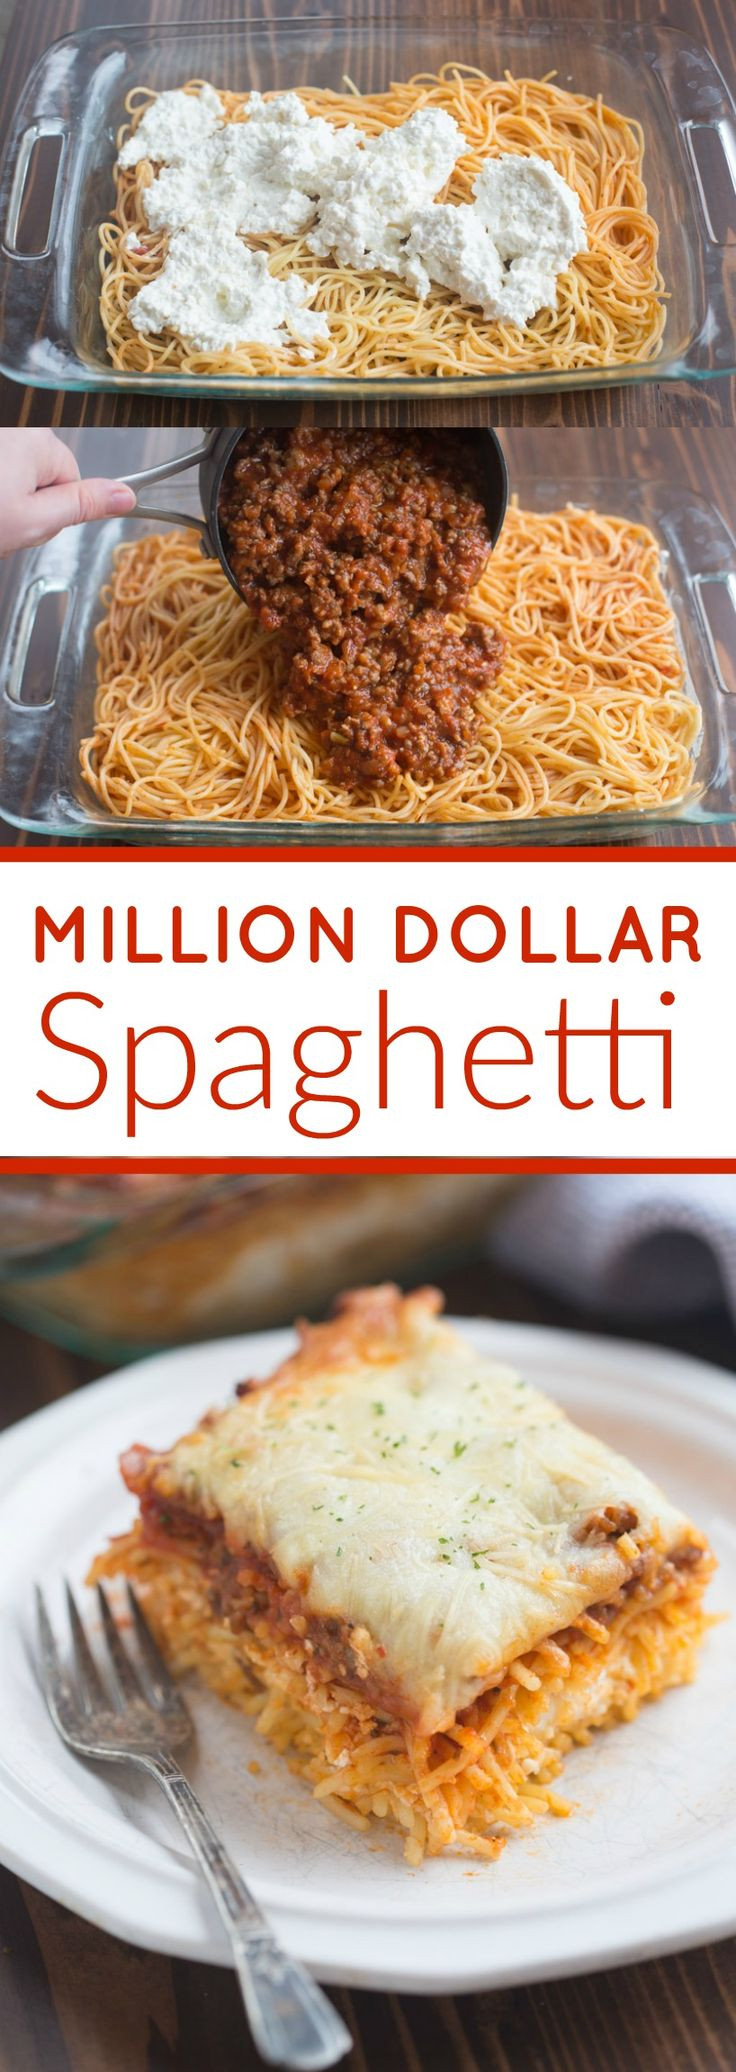 Spaghetti Dinner Party Ideas
 Best 25 Spaghetti dinner ideas on Pinterest